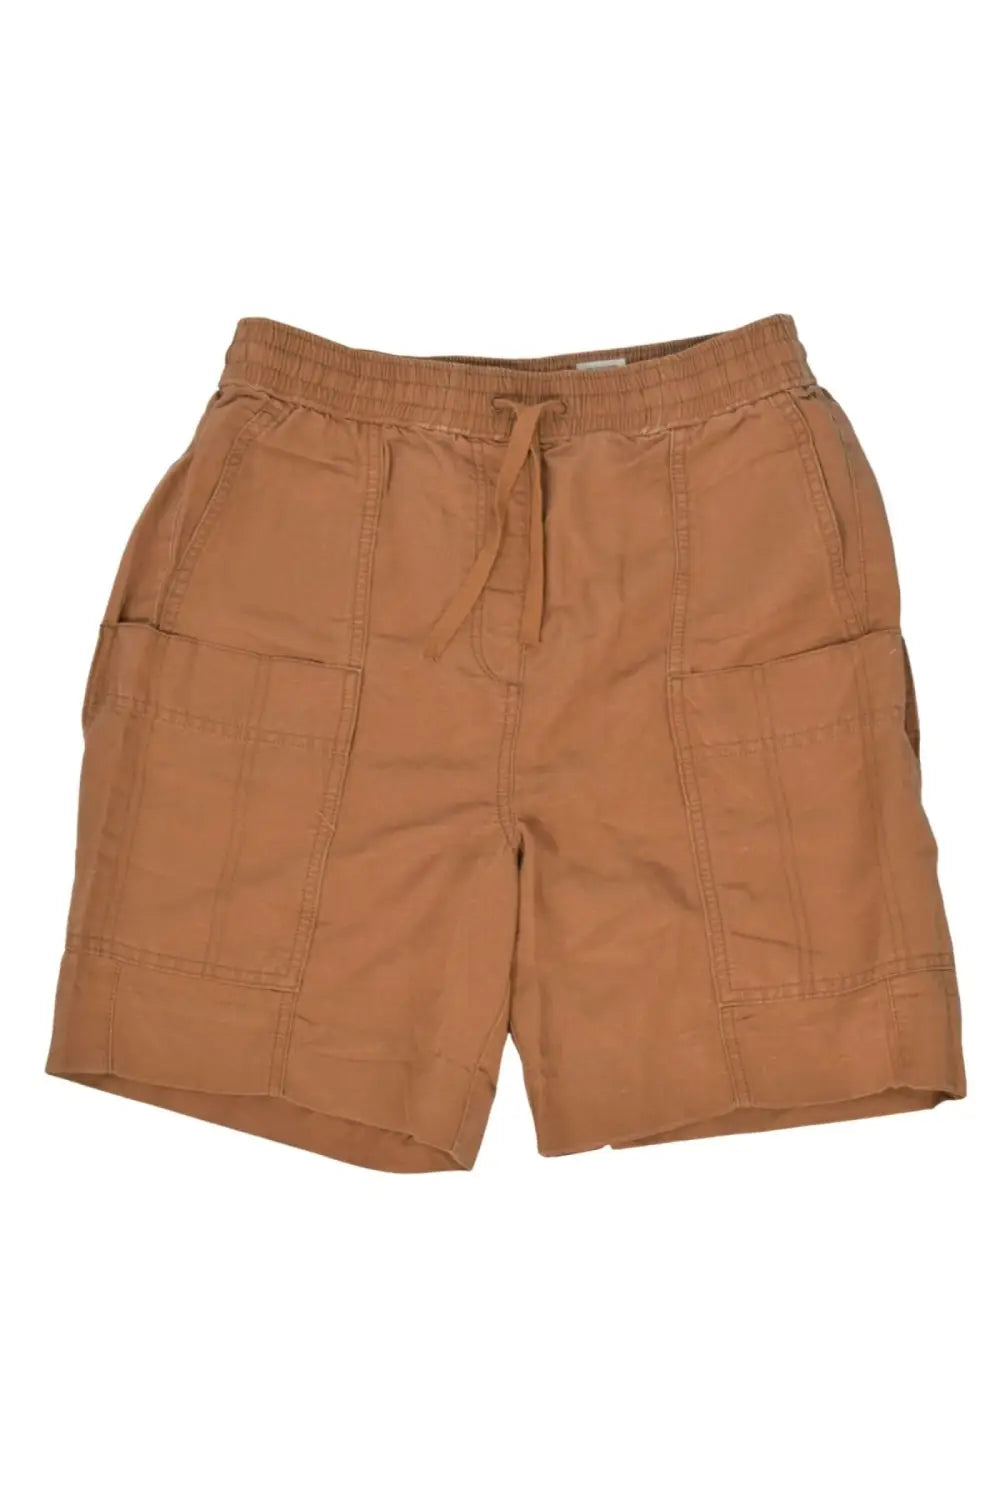 M&S Linen Comfort Utility Shorts